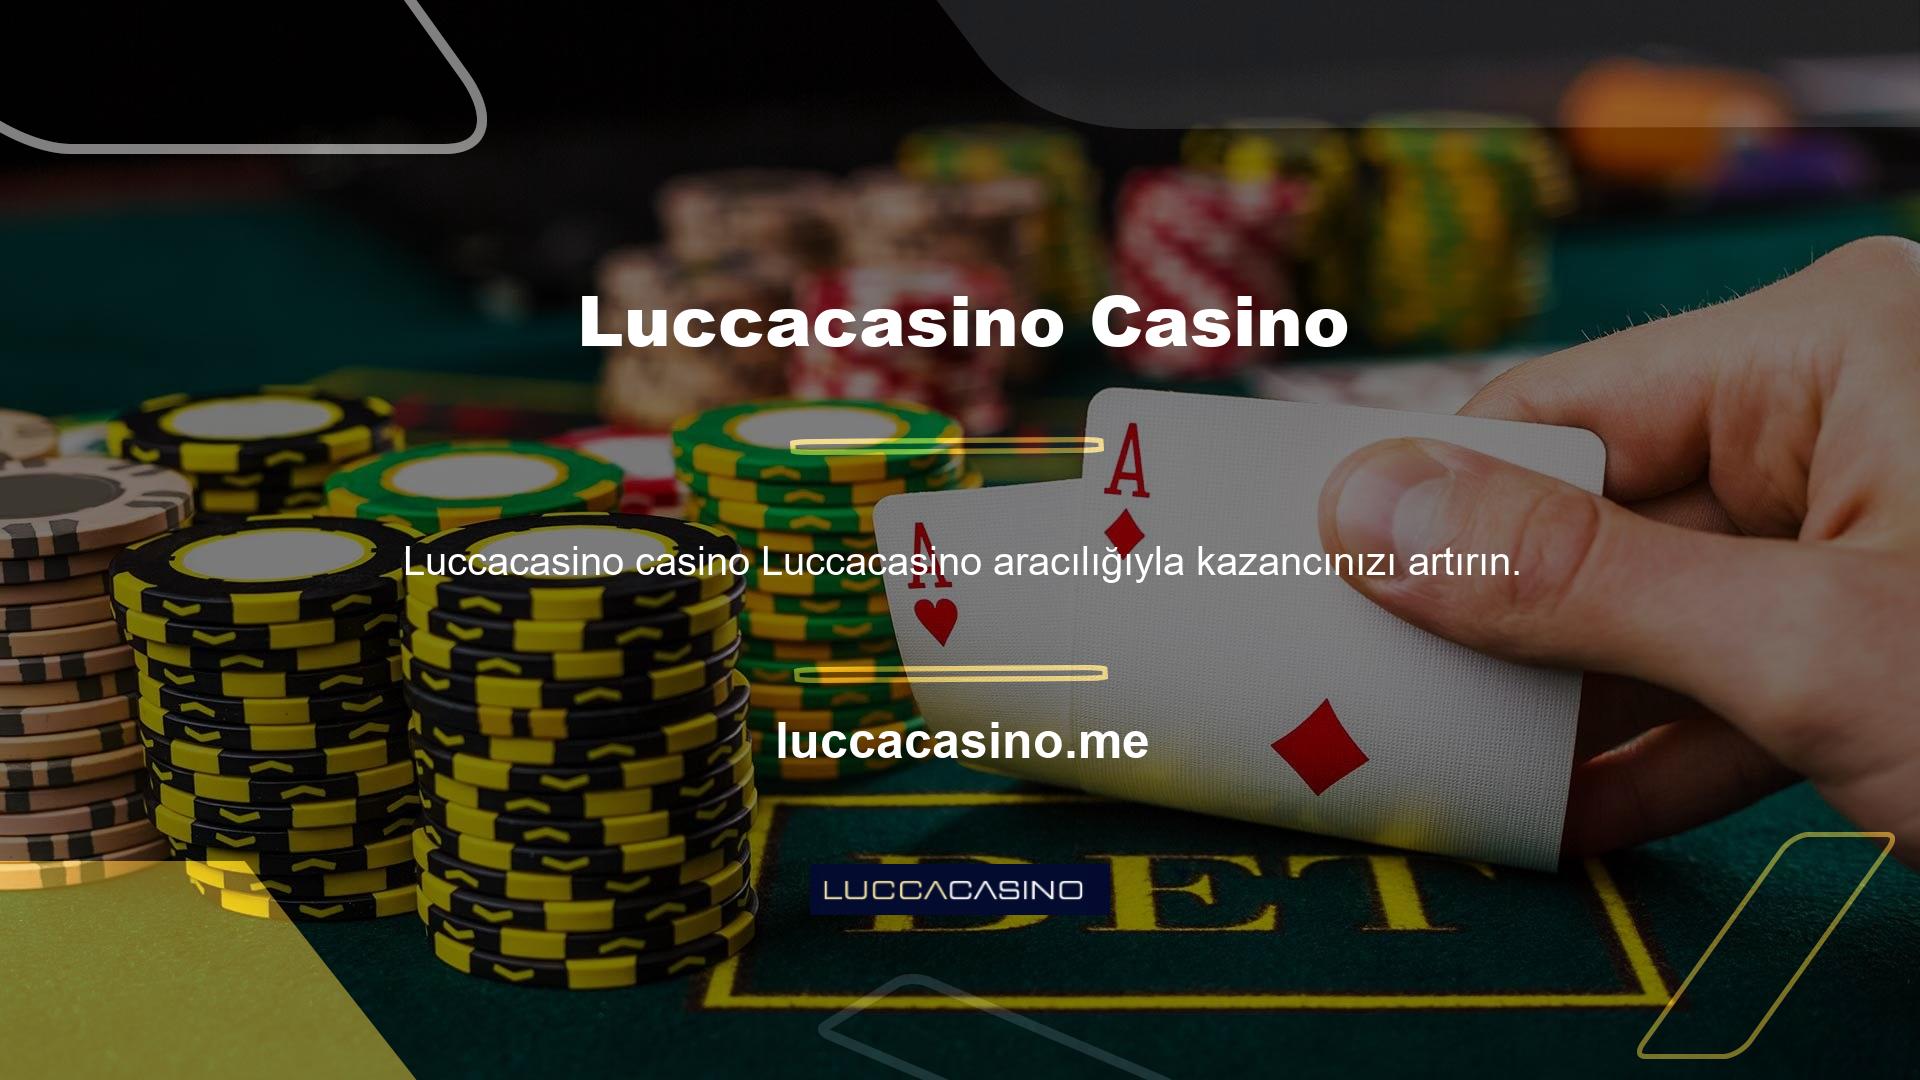 Resmi Türk Casino sitesi Luccacasino, çevrimdışı olmasına rağmen daha fazla gelir elde ediyor